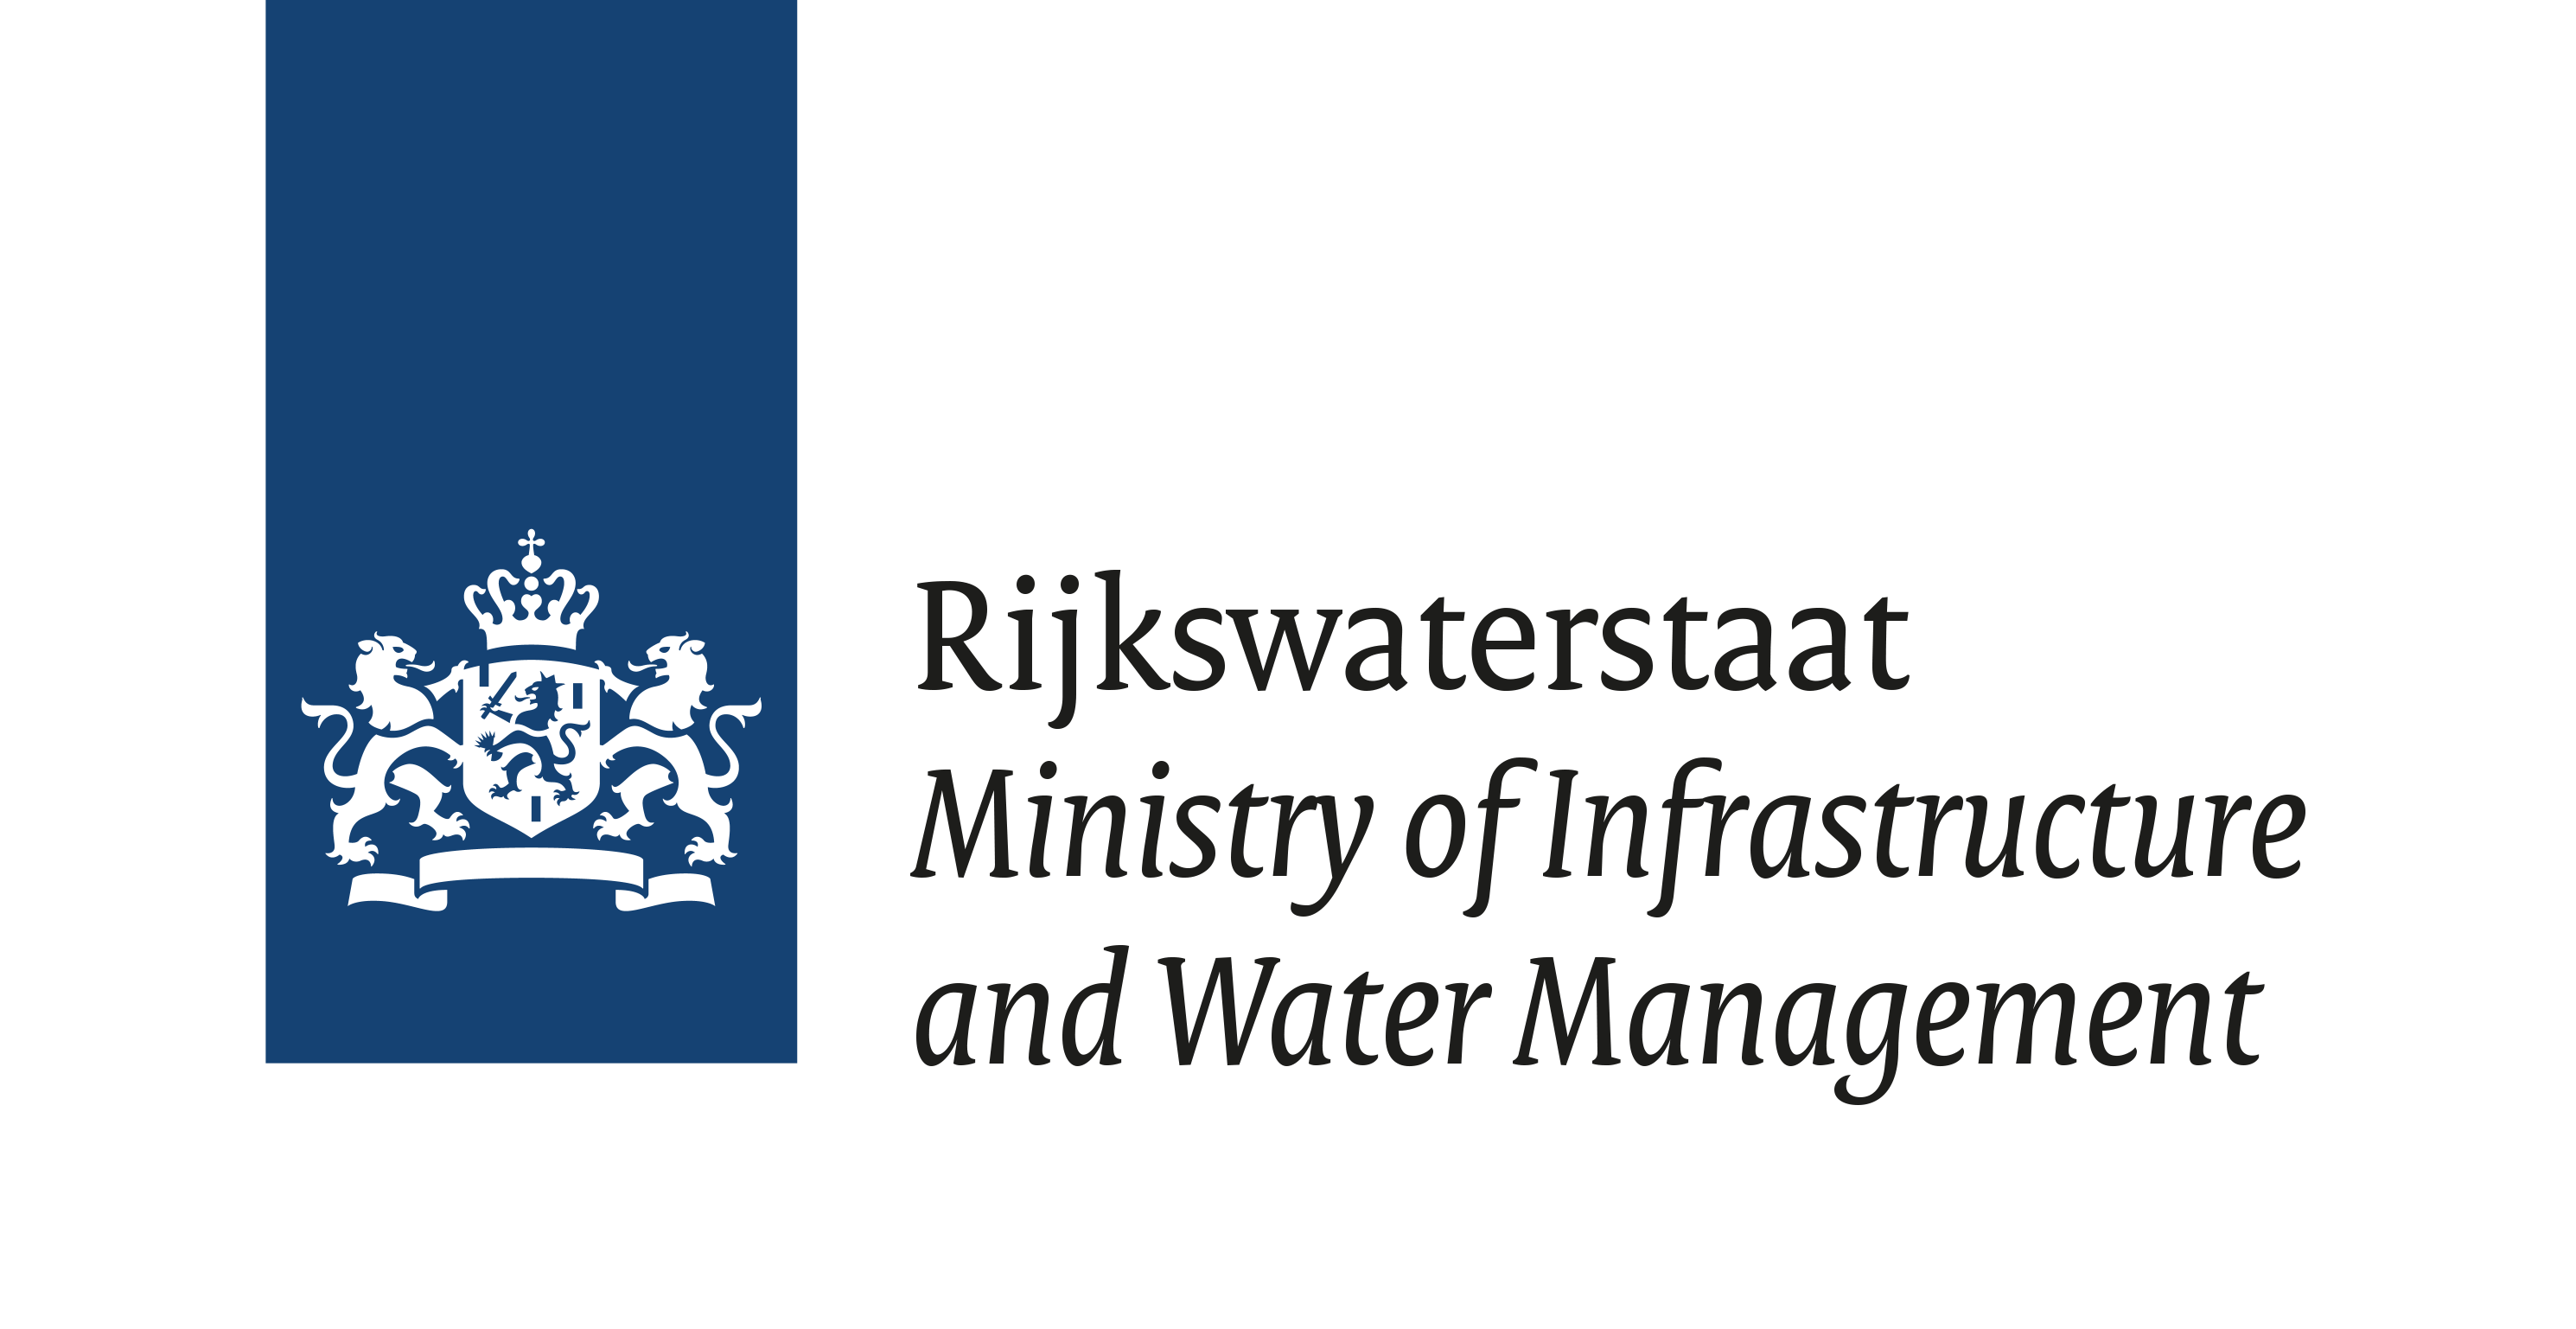 logo-rijkswaterstaat